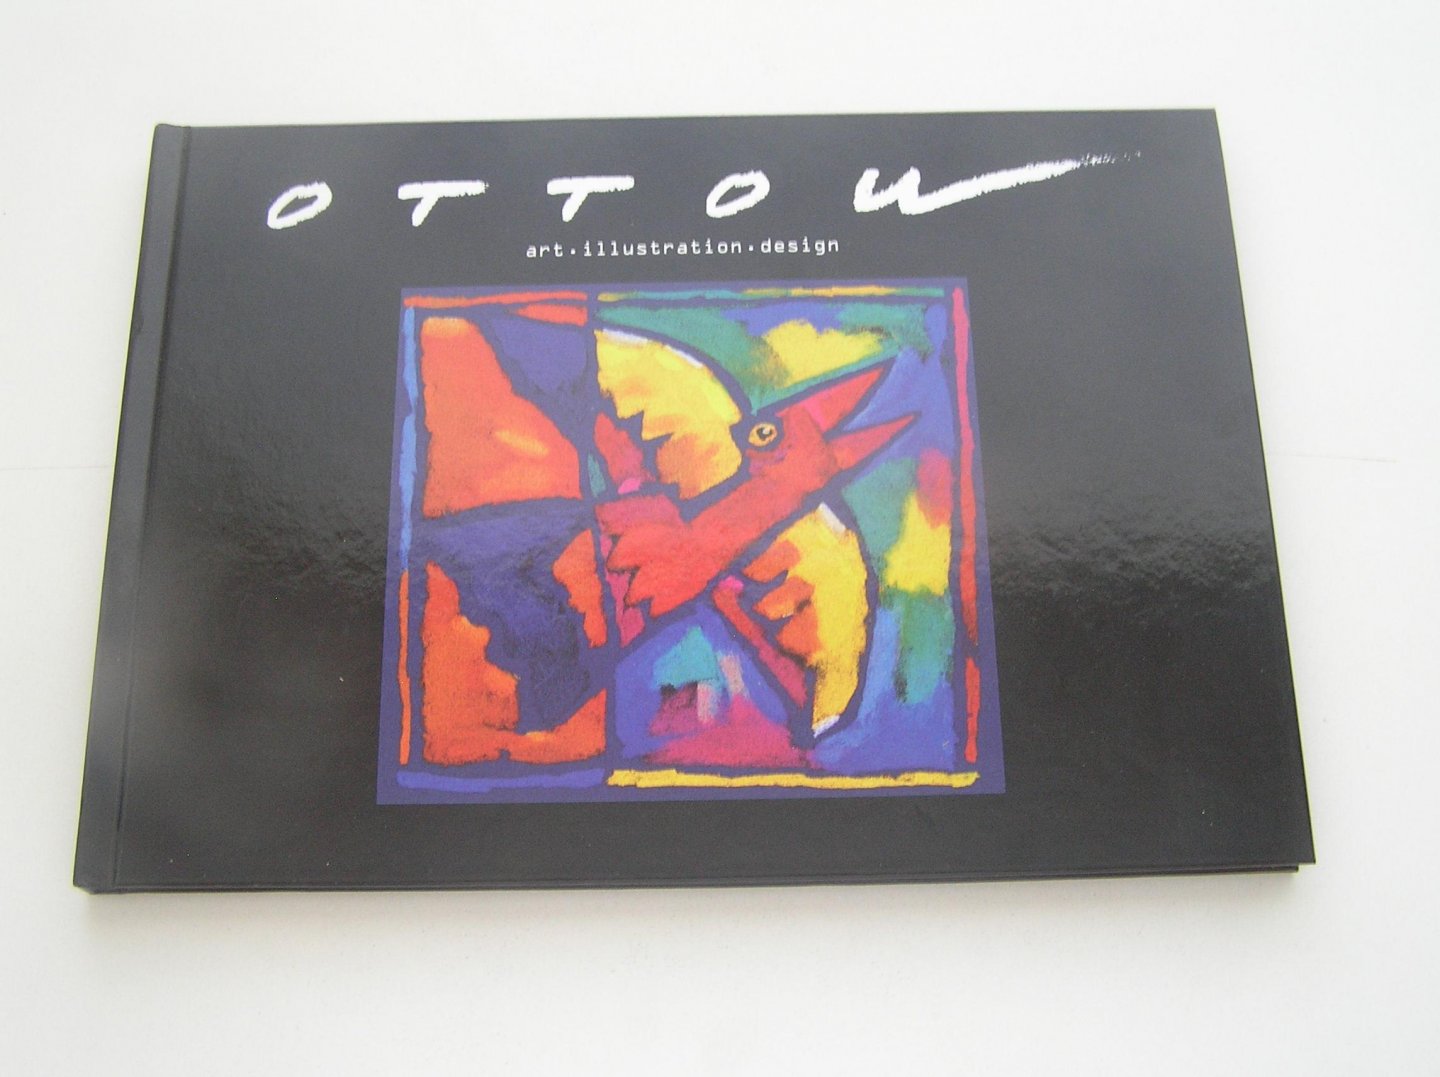 Ottow Roel - OTTOW art.illustration design